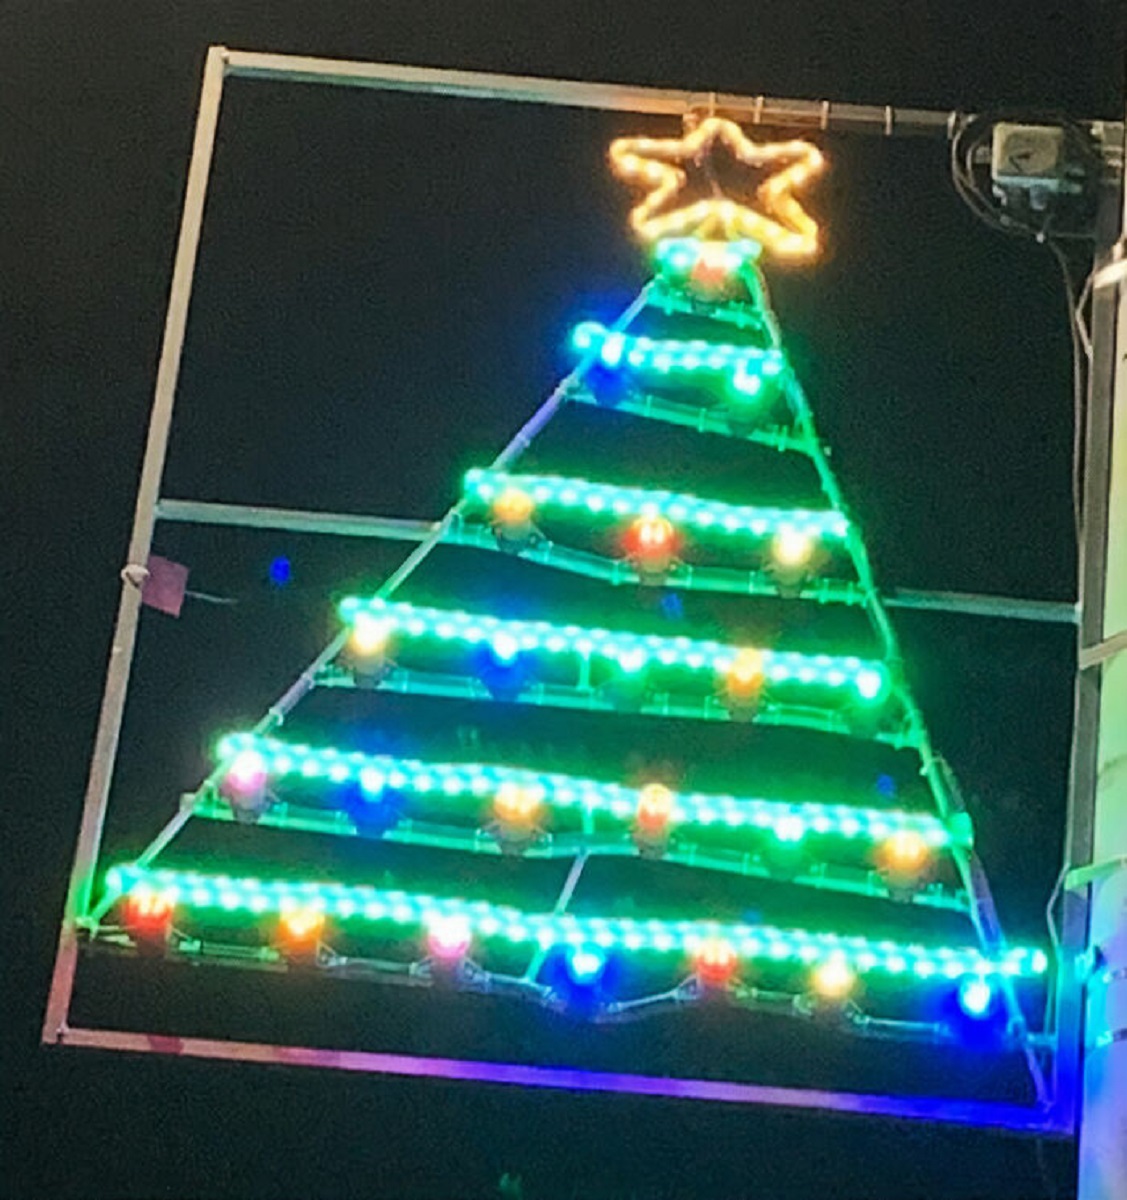 Na Escocia as criancas projetam suas luzes de Natal e resultado e adoravel 18